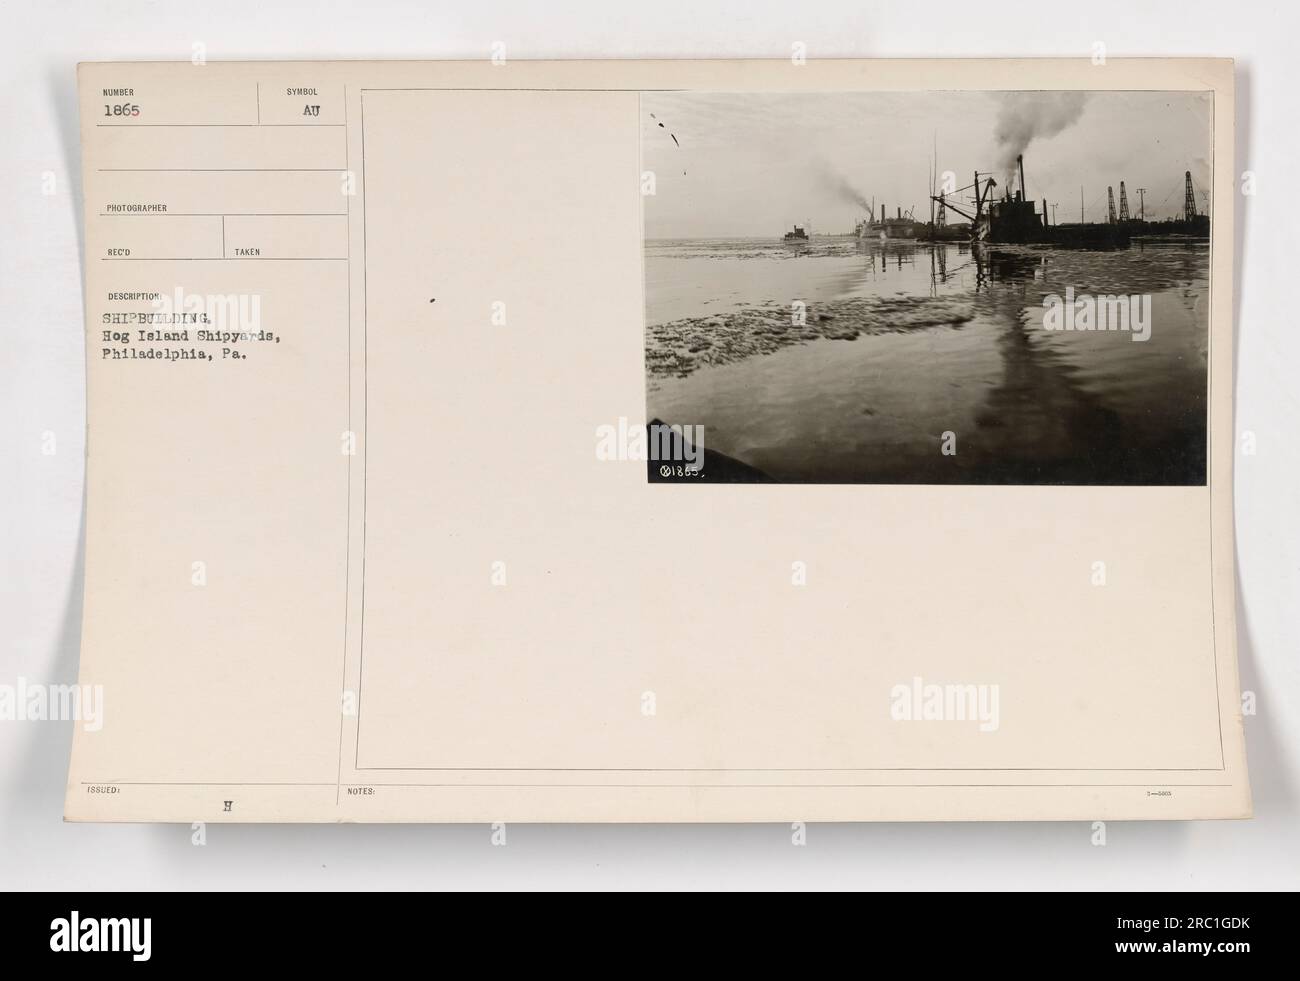 Das Bild zeigt Schiffbauaktivitäten, die während des Ersten Weltkriegs an den Hog Island Shipyards in Philadelphia stattfinden. Das Foto stammt aus der Sammlung „Fotos amerikanischer Militäraktivitäten“ und ist als 111-SC-1865 gekennzeichnet. Das genaue Datum des Bildes ist unklar, aber es wurde während des Krieges aufgenommen. Stockfoto